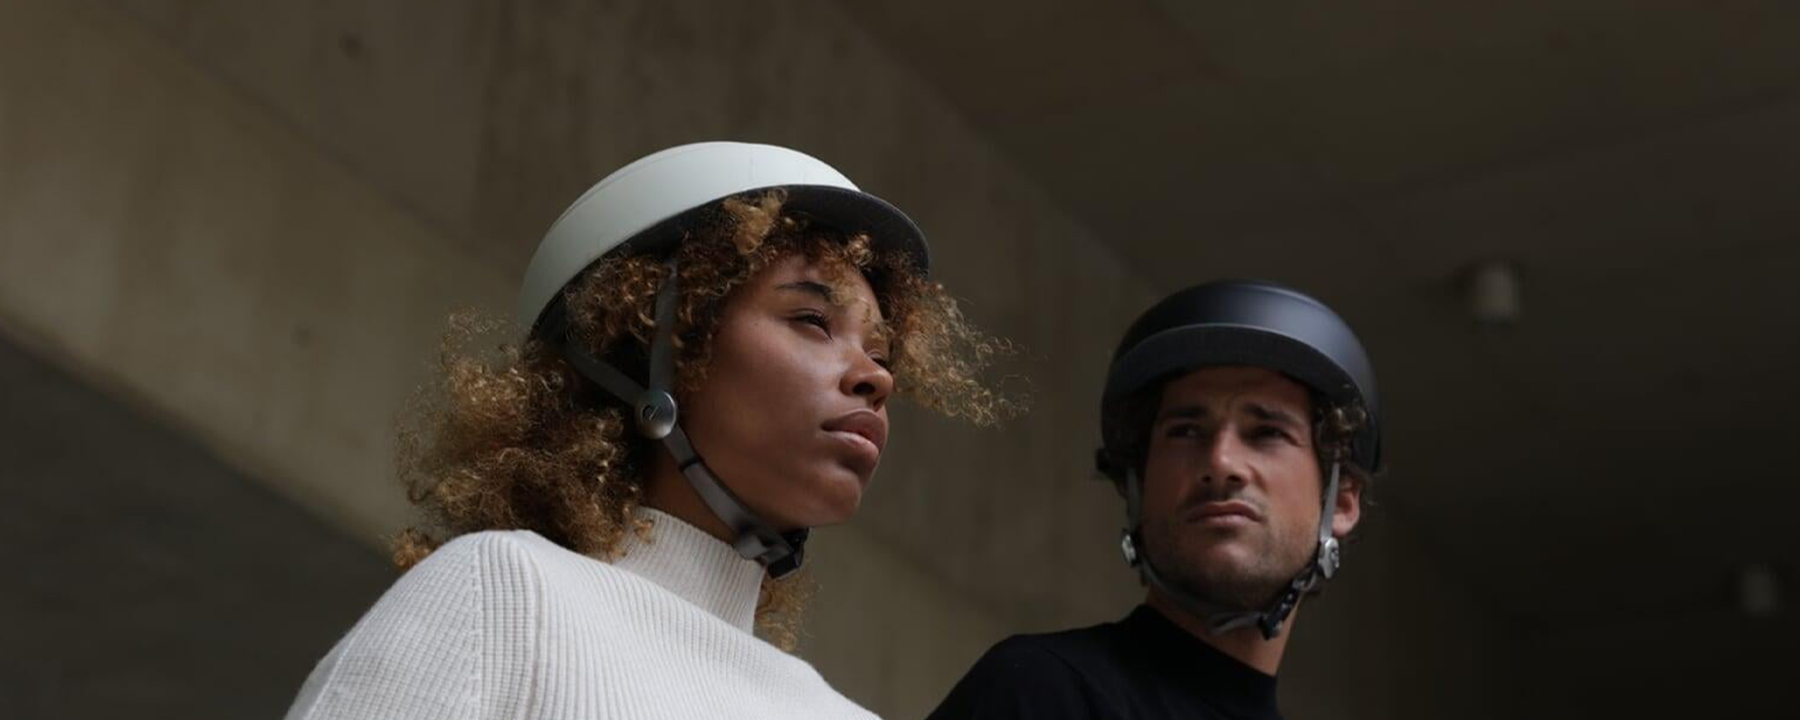 introducing: closca helmets